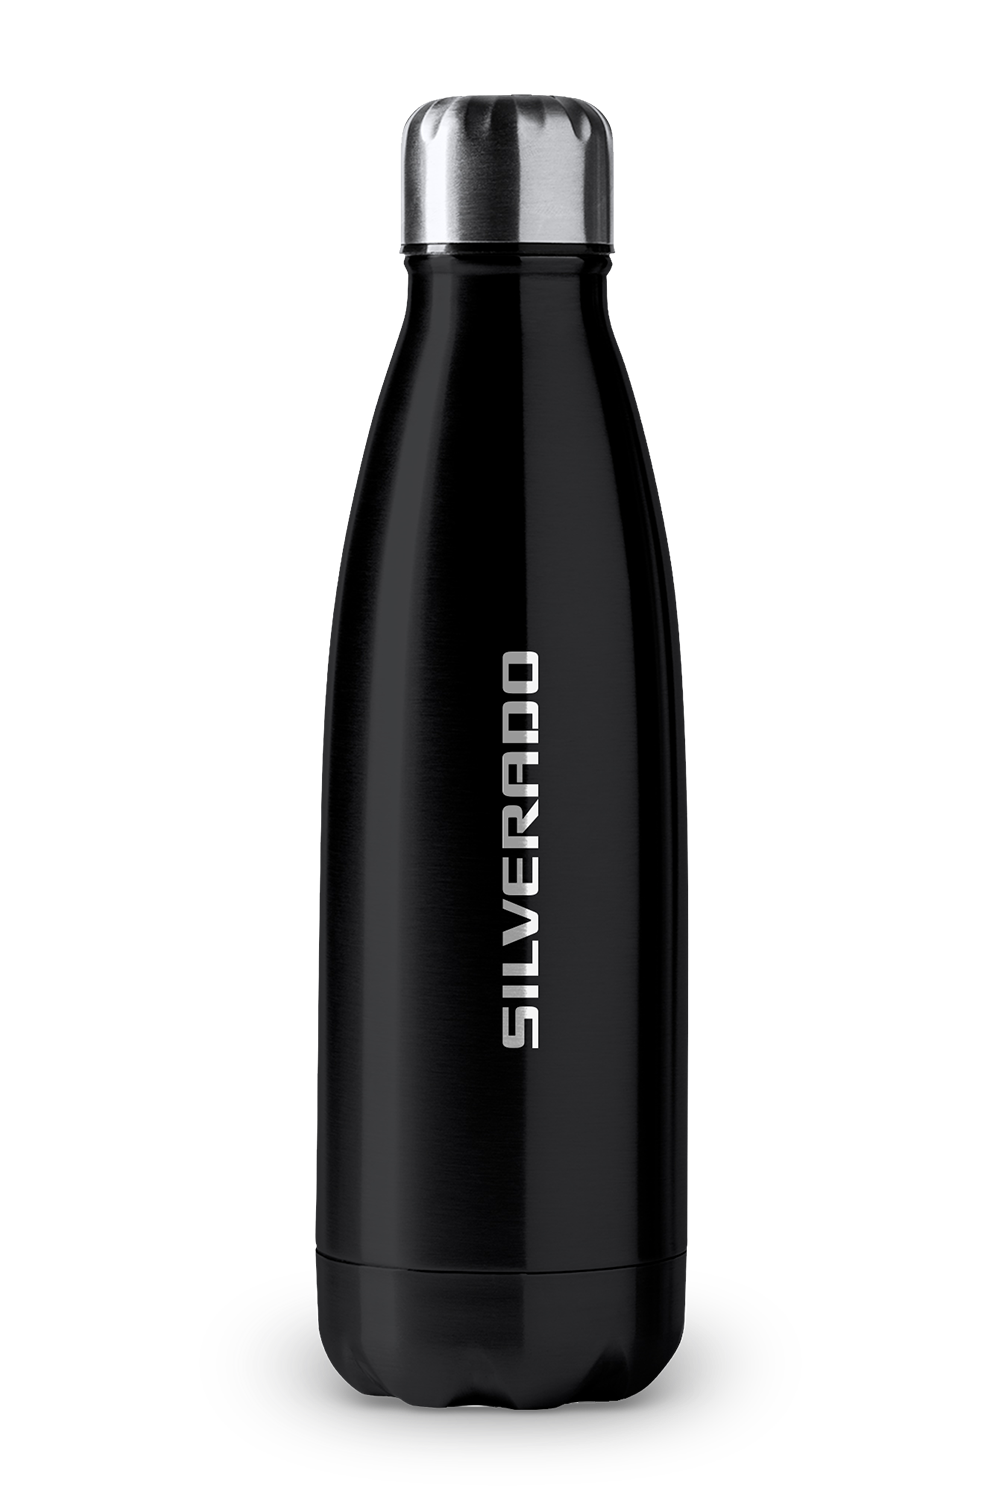 Silverado - 750mL Stainless Steel Drink Bottle